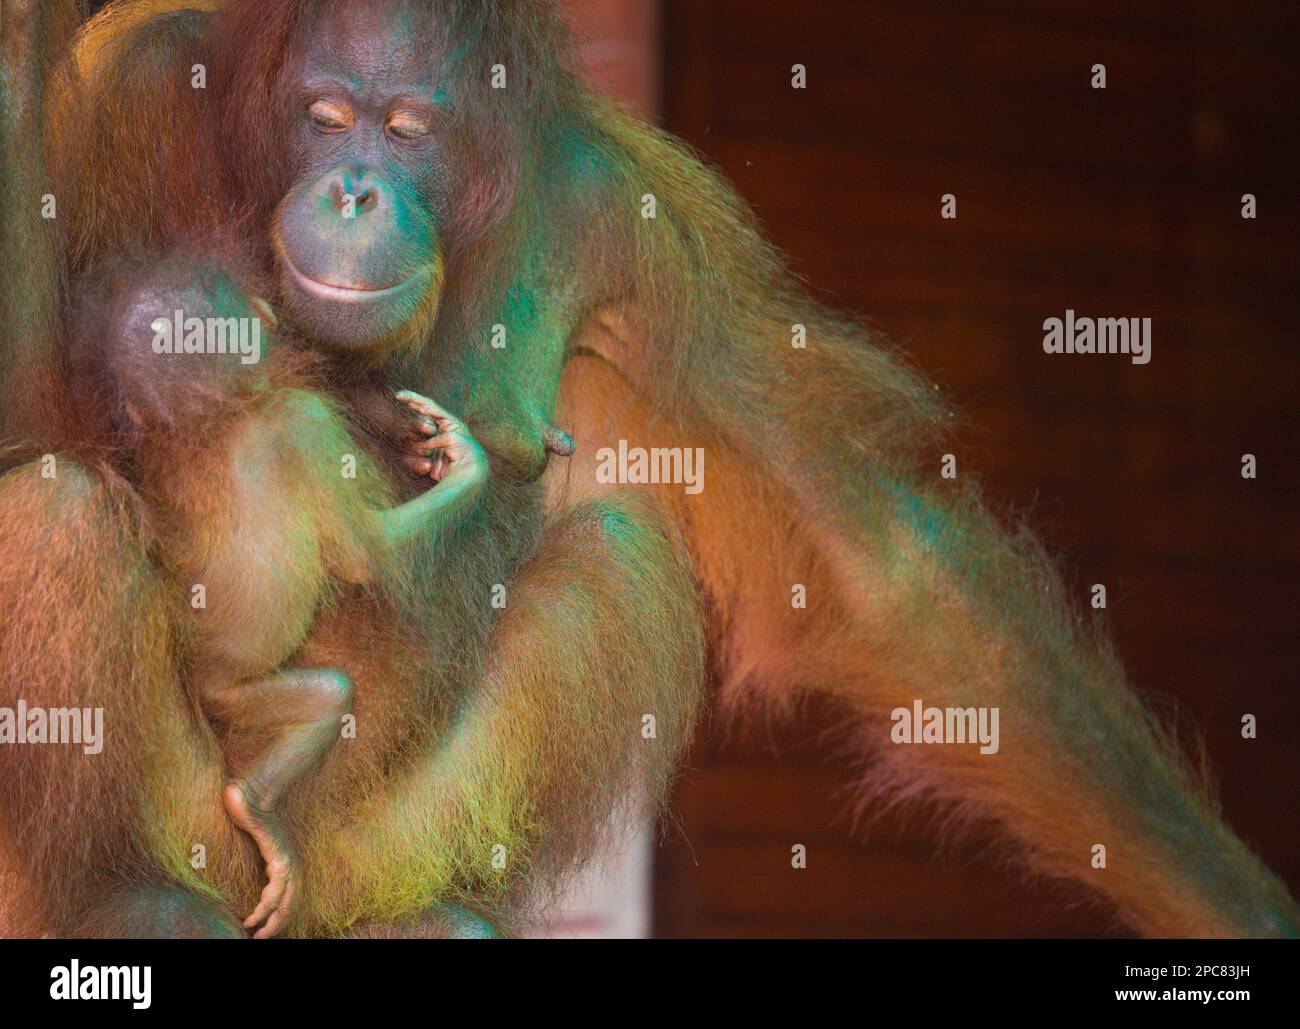 Orangutan, Pongo Pygmaeus, Malaysia, Sabah, Sepilok, Stock Photo